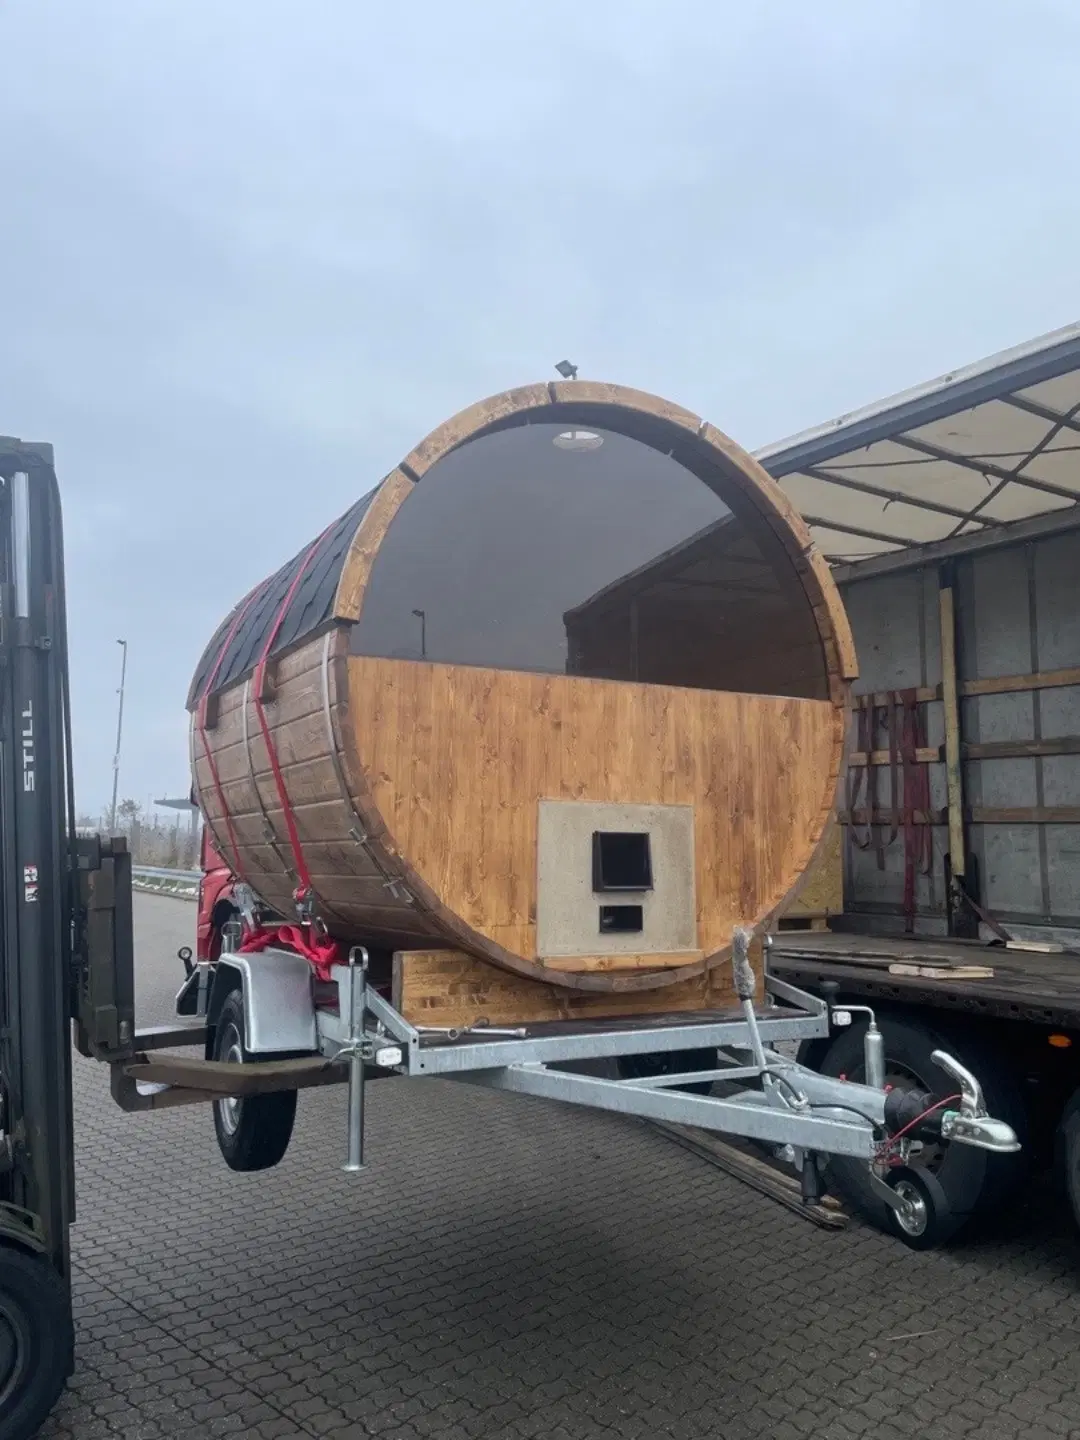 UDLEJES-mobil tønde sauna udlejes i nordsjælland